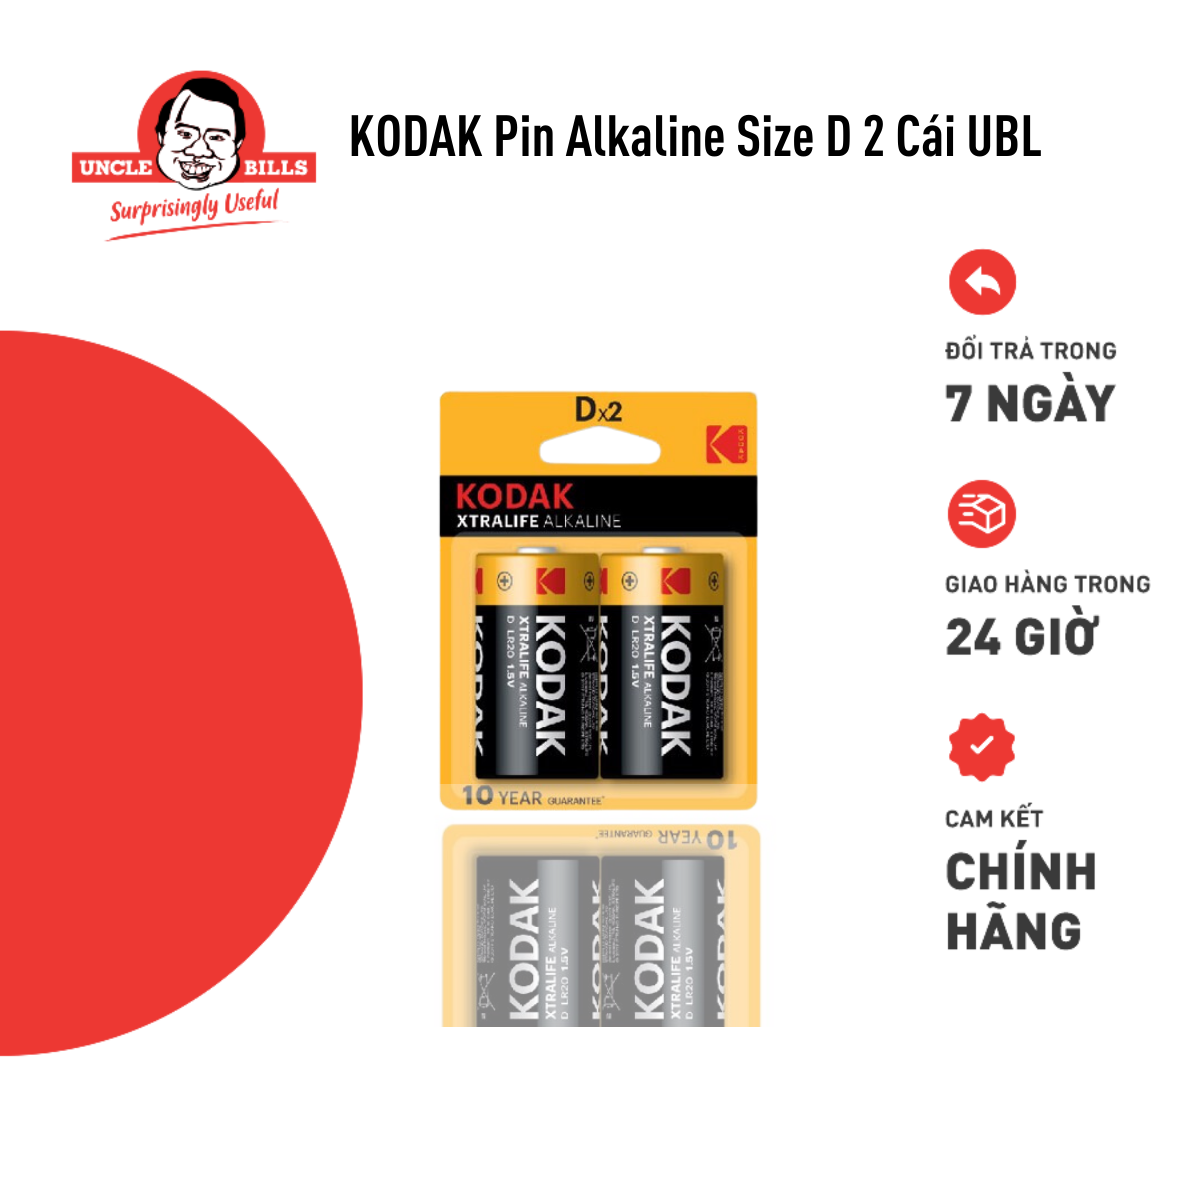 Bộ 2 Pin Kodak Alkaline D UBL IB0161